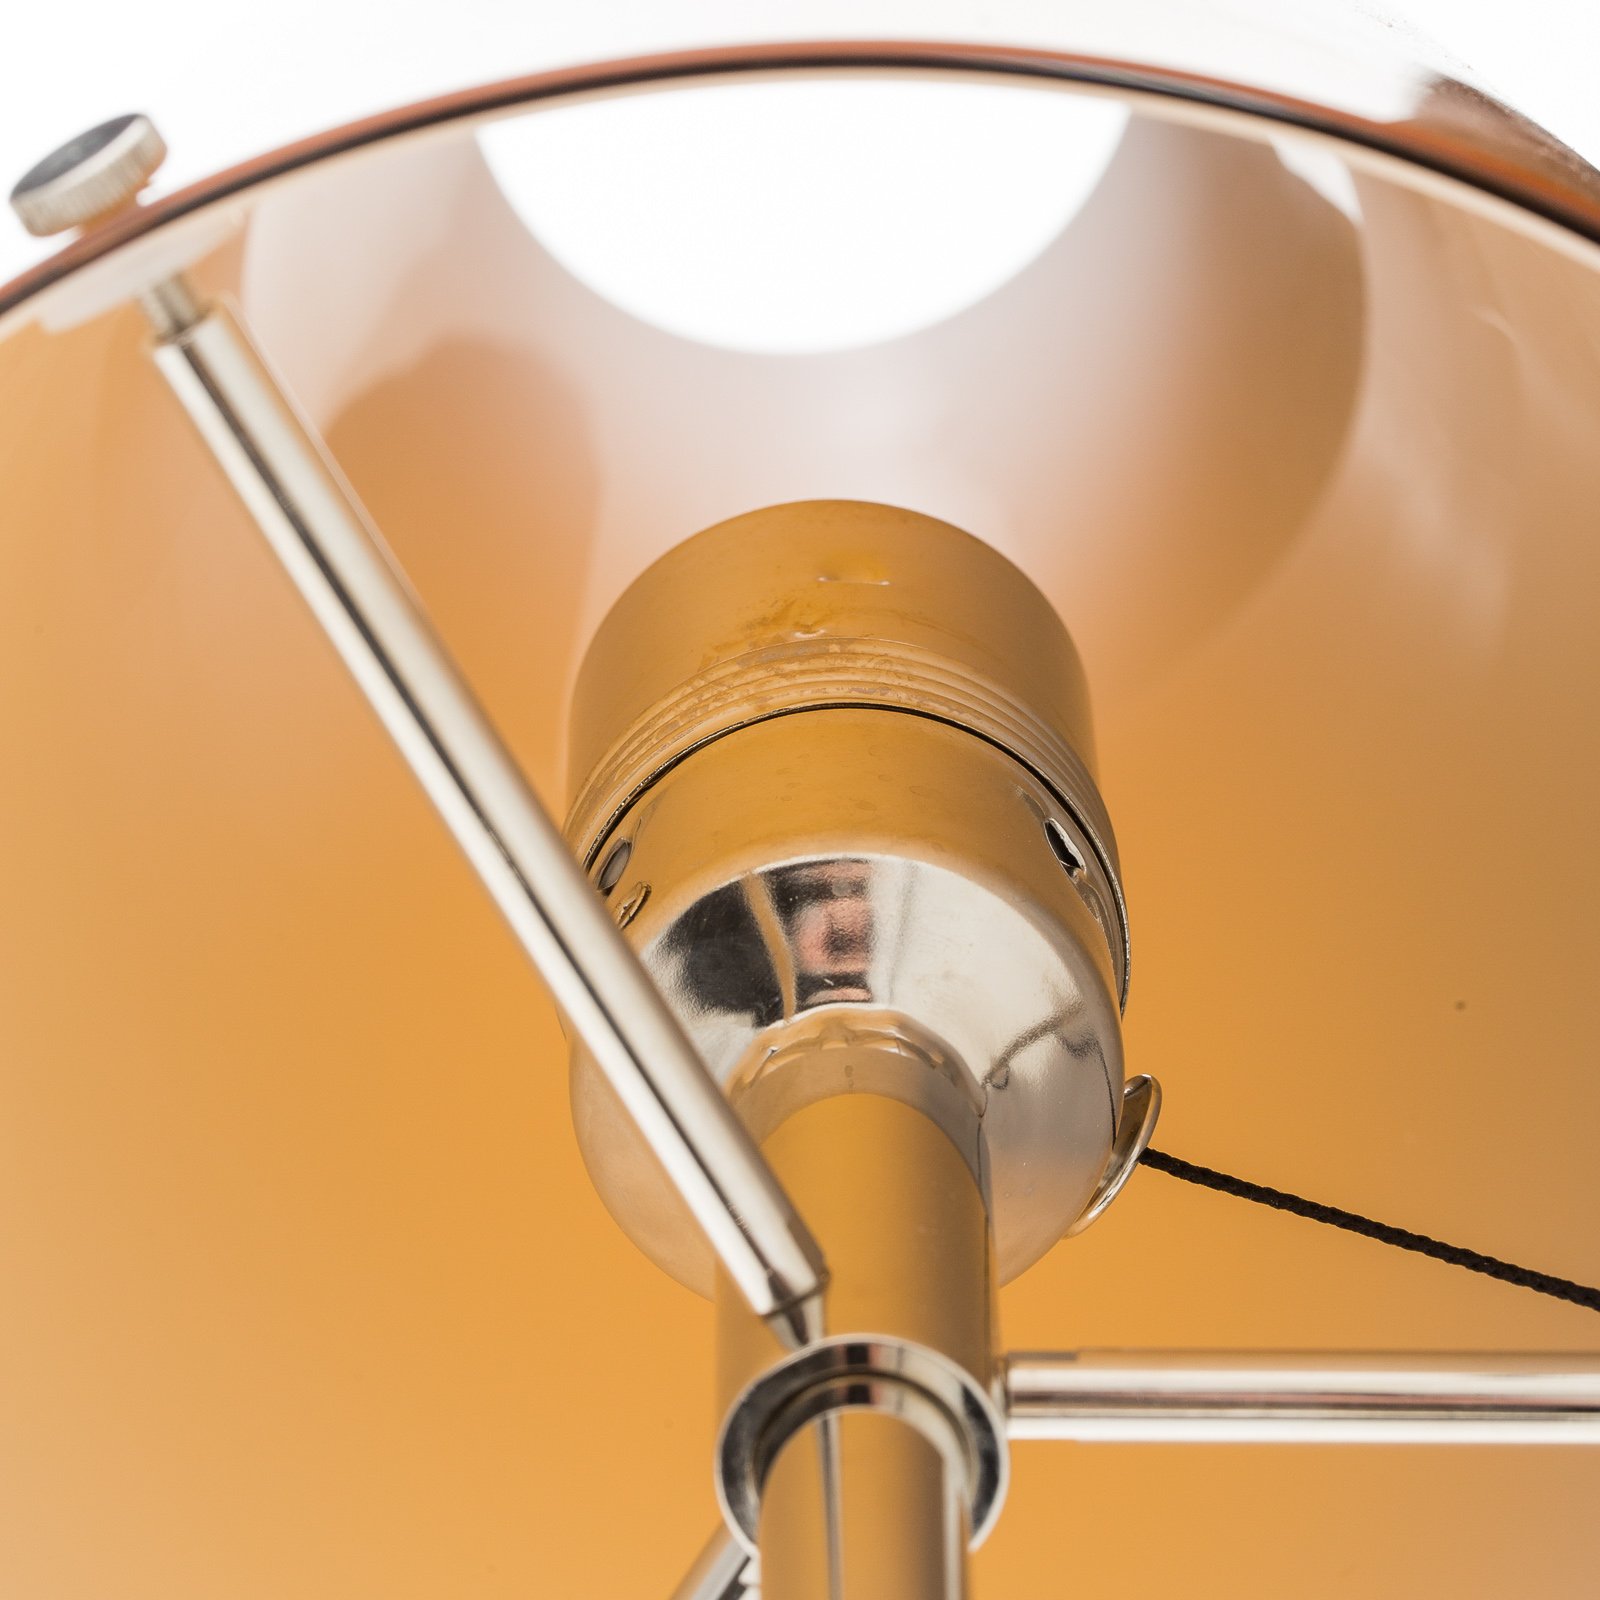 TECNOLUMEN Walter Schnepel stolová lampa, oranžová